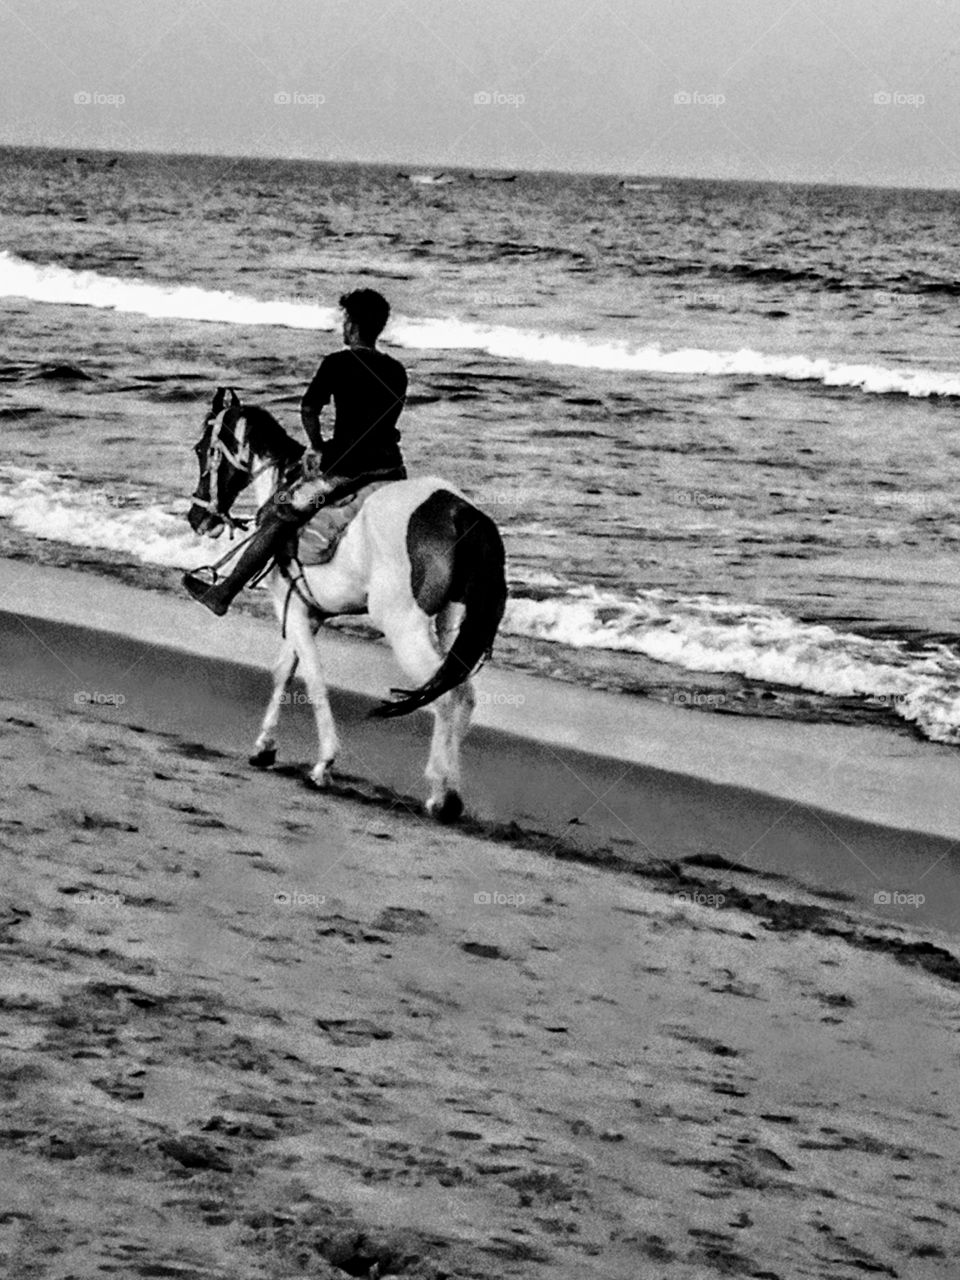 horse riding at sea beach
horse riding
sea beach
black &white